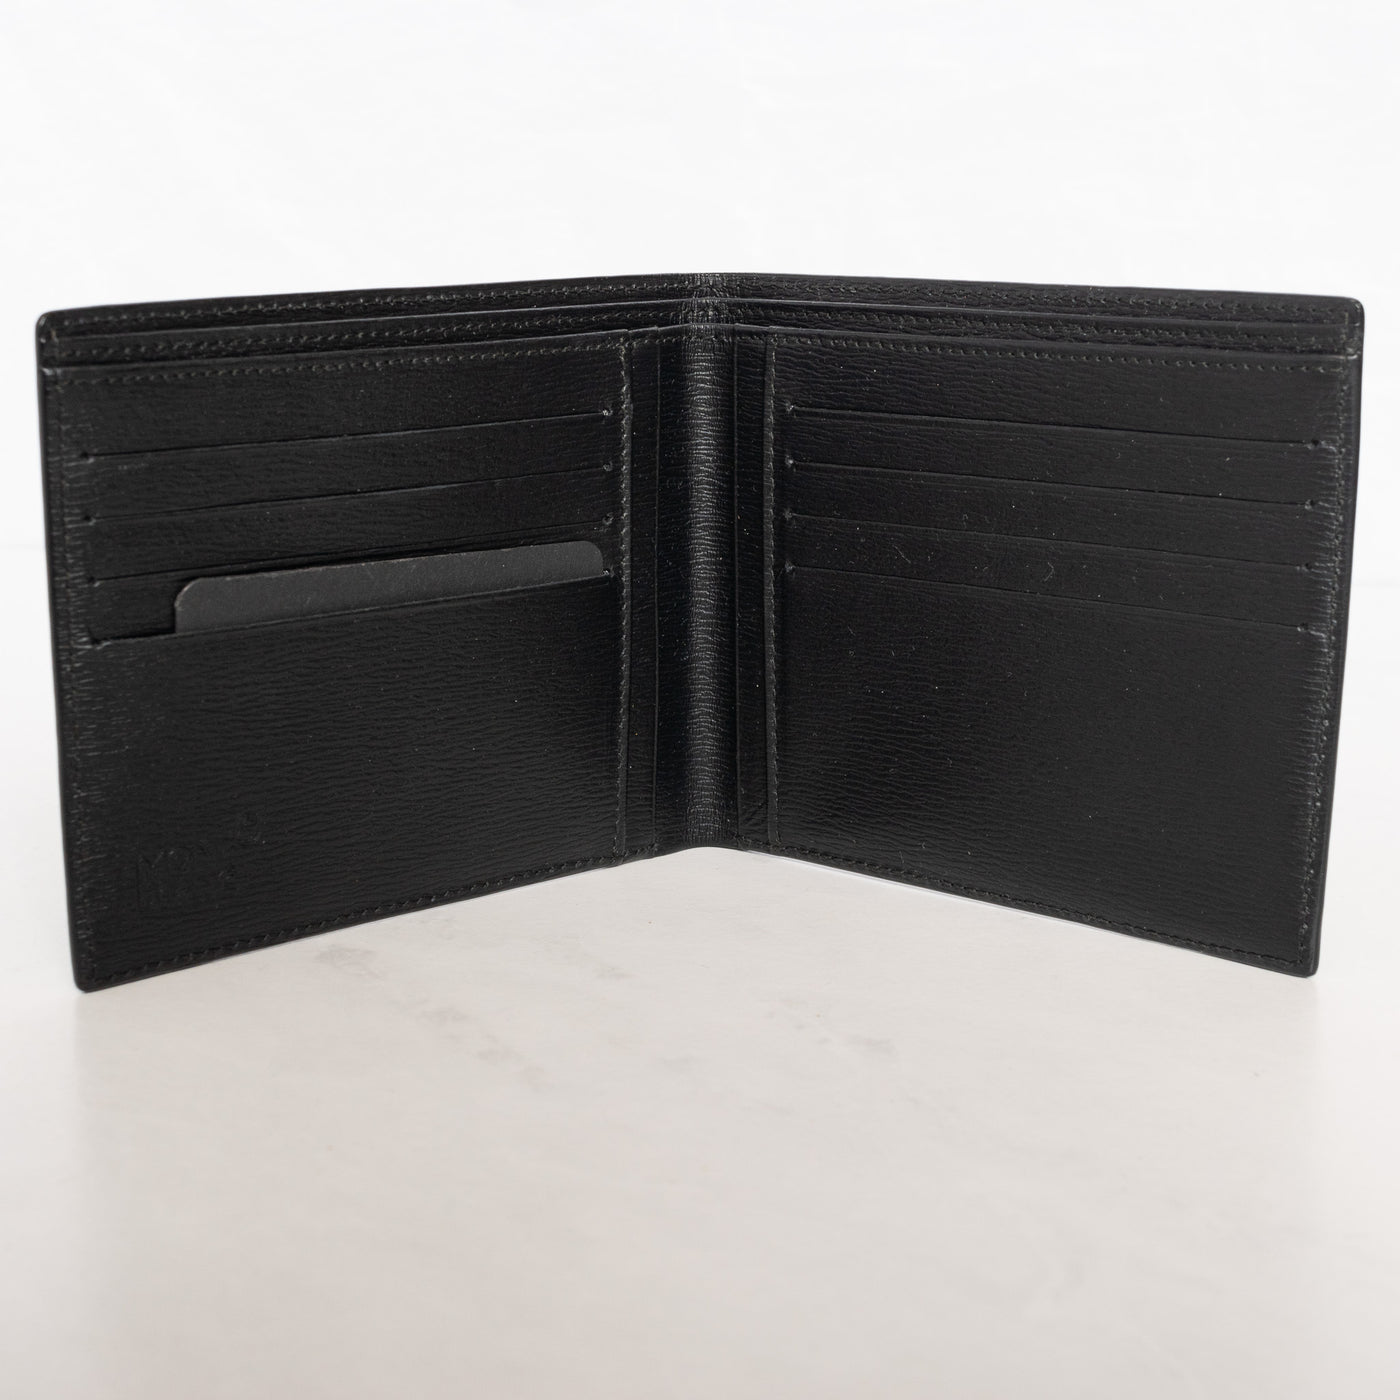 Montblanc Leather Goods Westside 4810 Black 8cc Wallet 8372 credit card